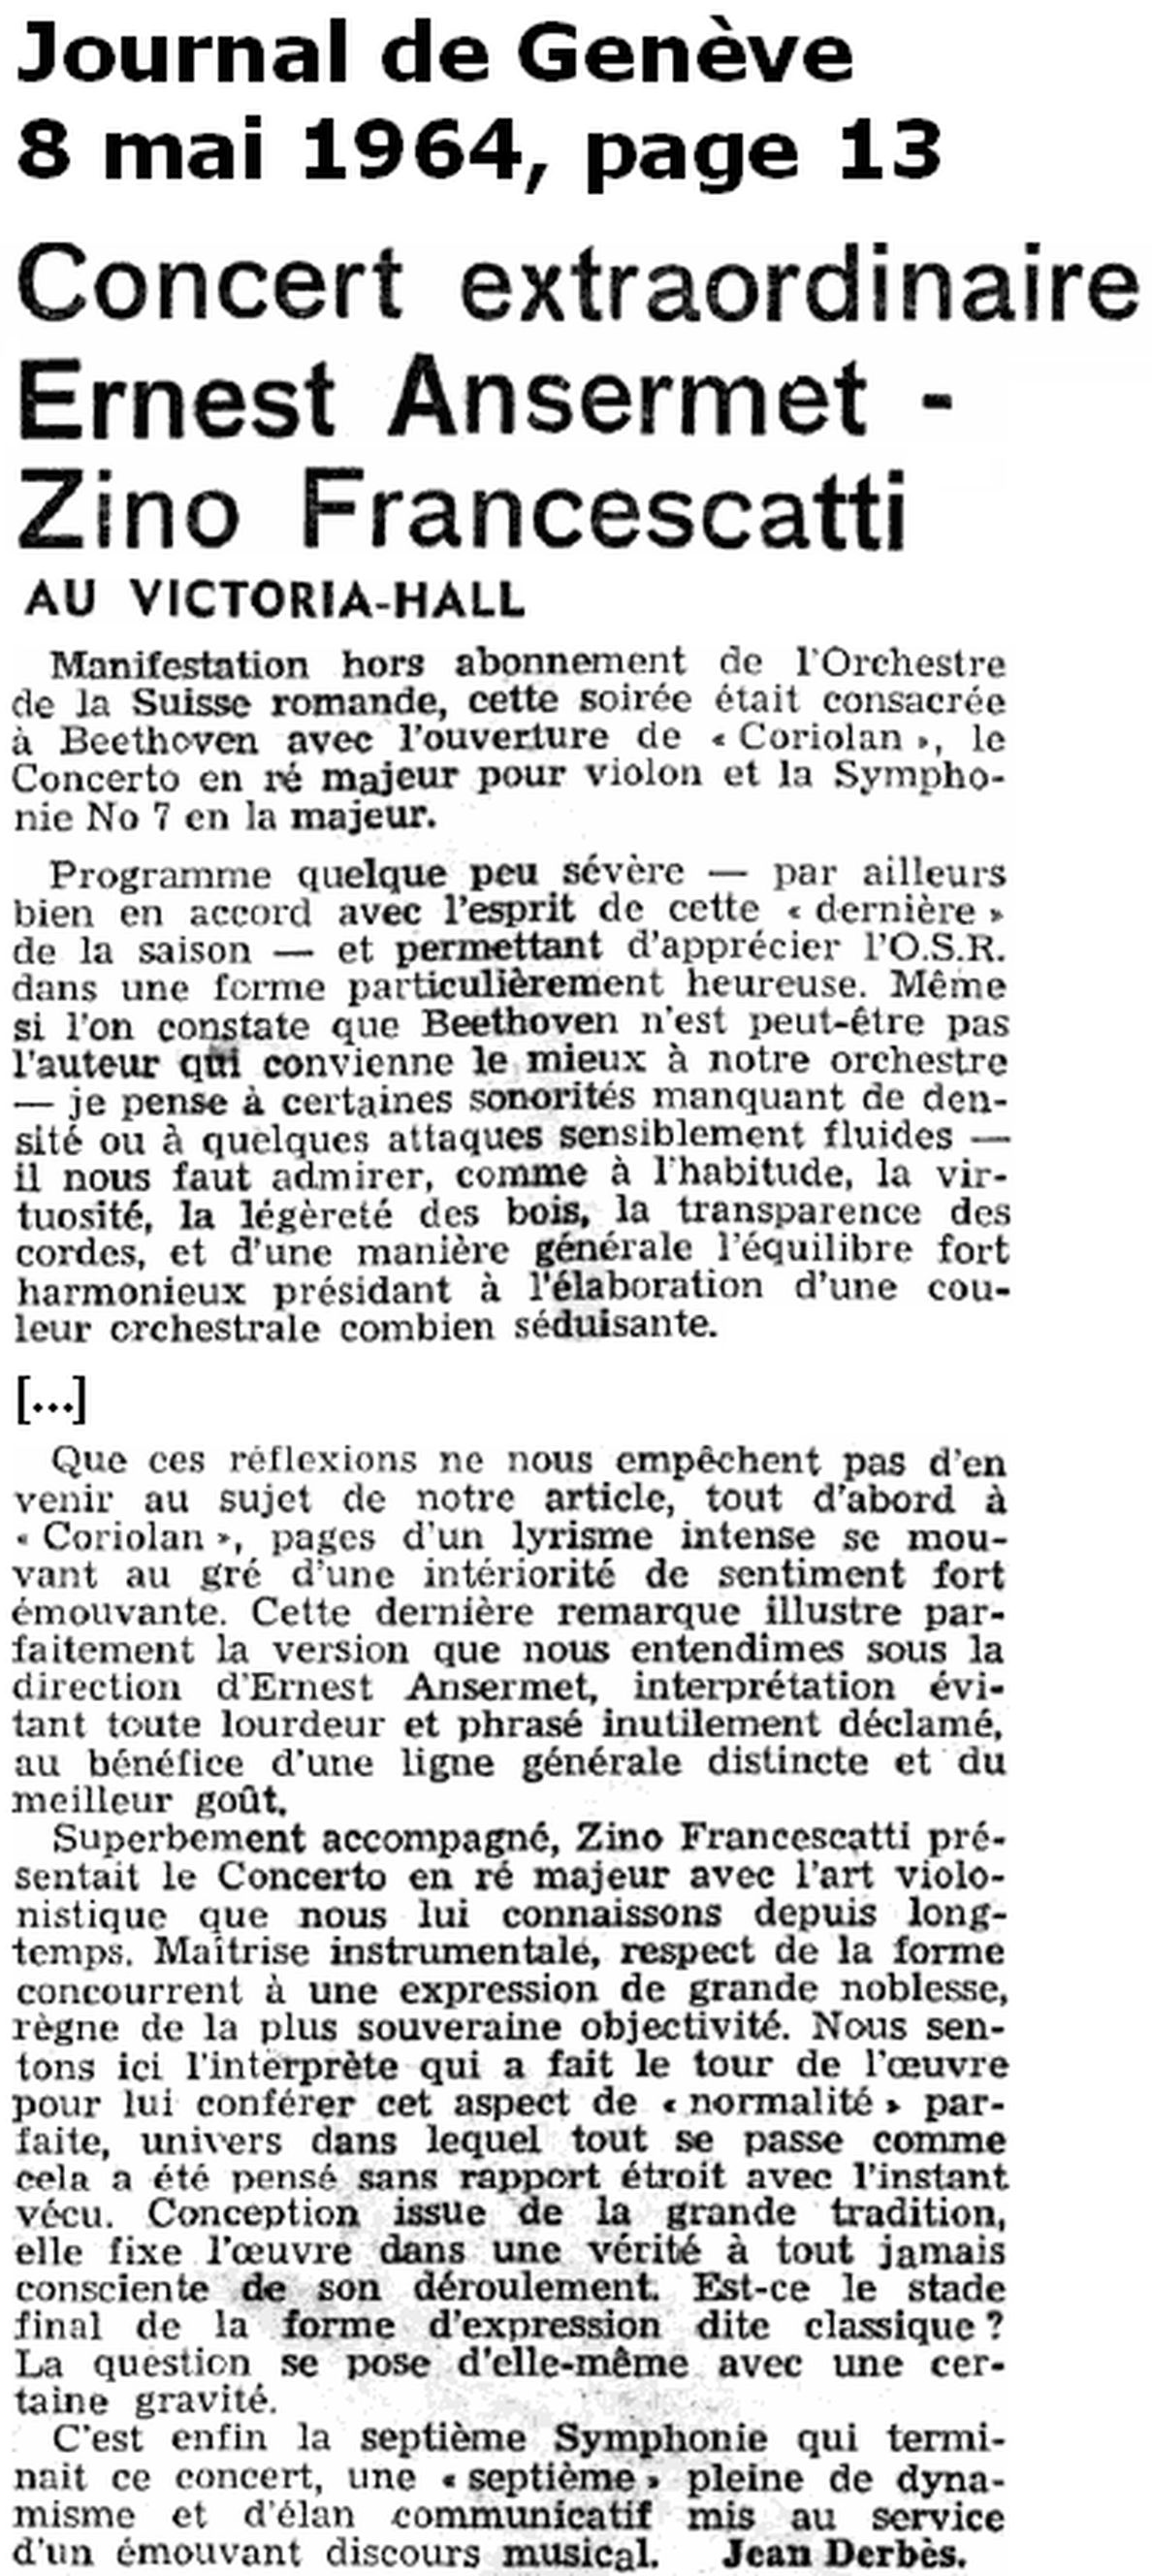 extrait Journal de Genève (8 mai 1964, page 13), clicquer pour une vue agrandie